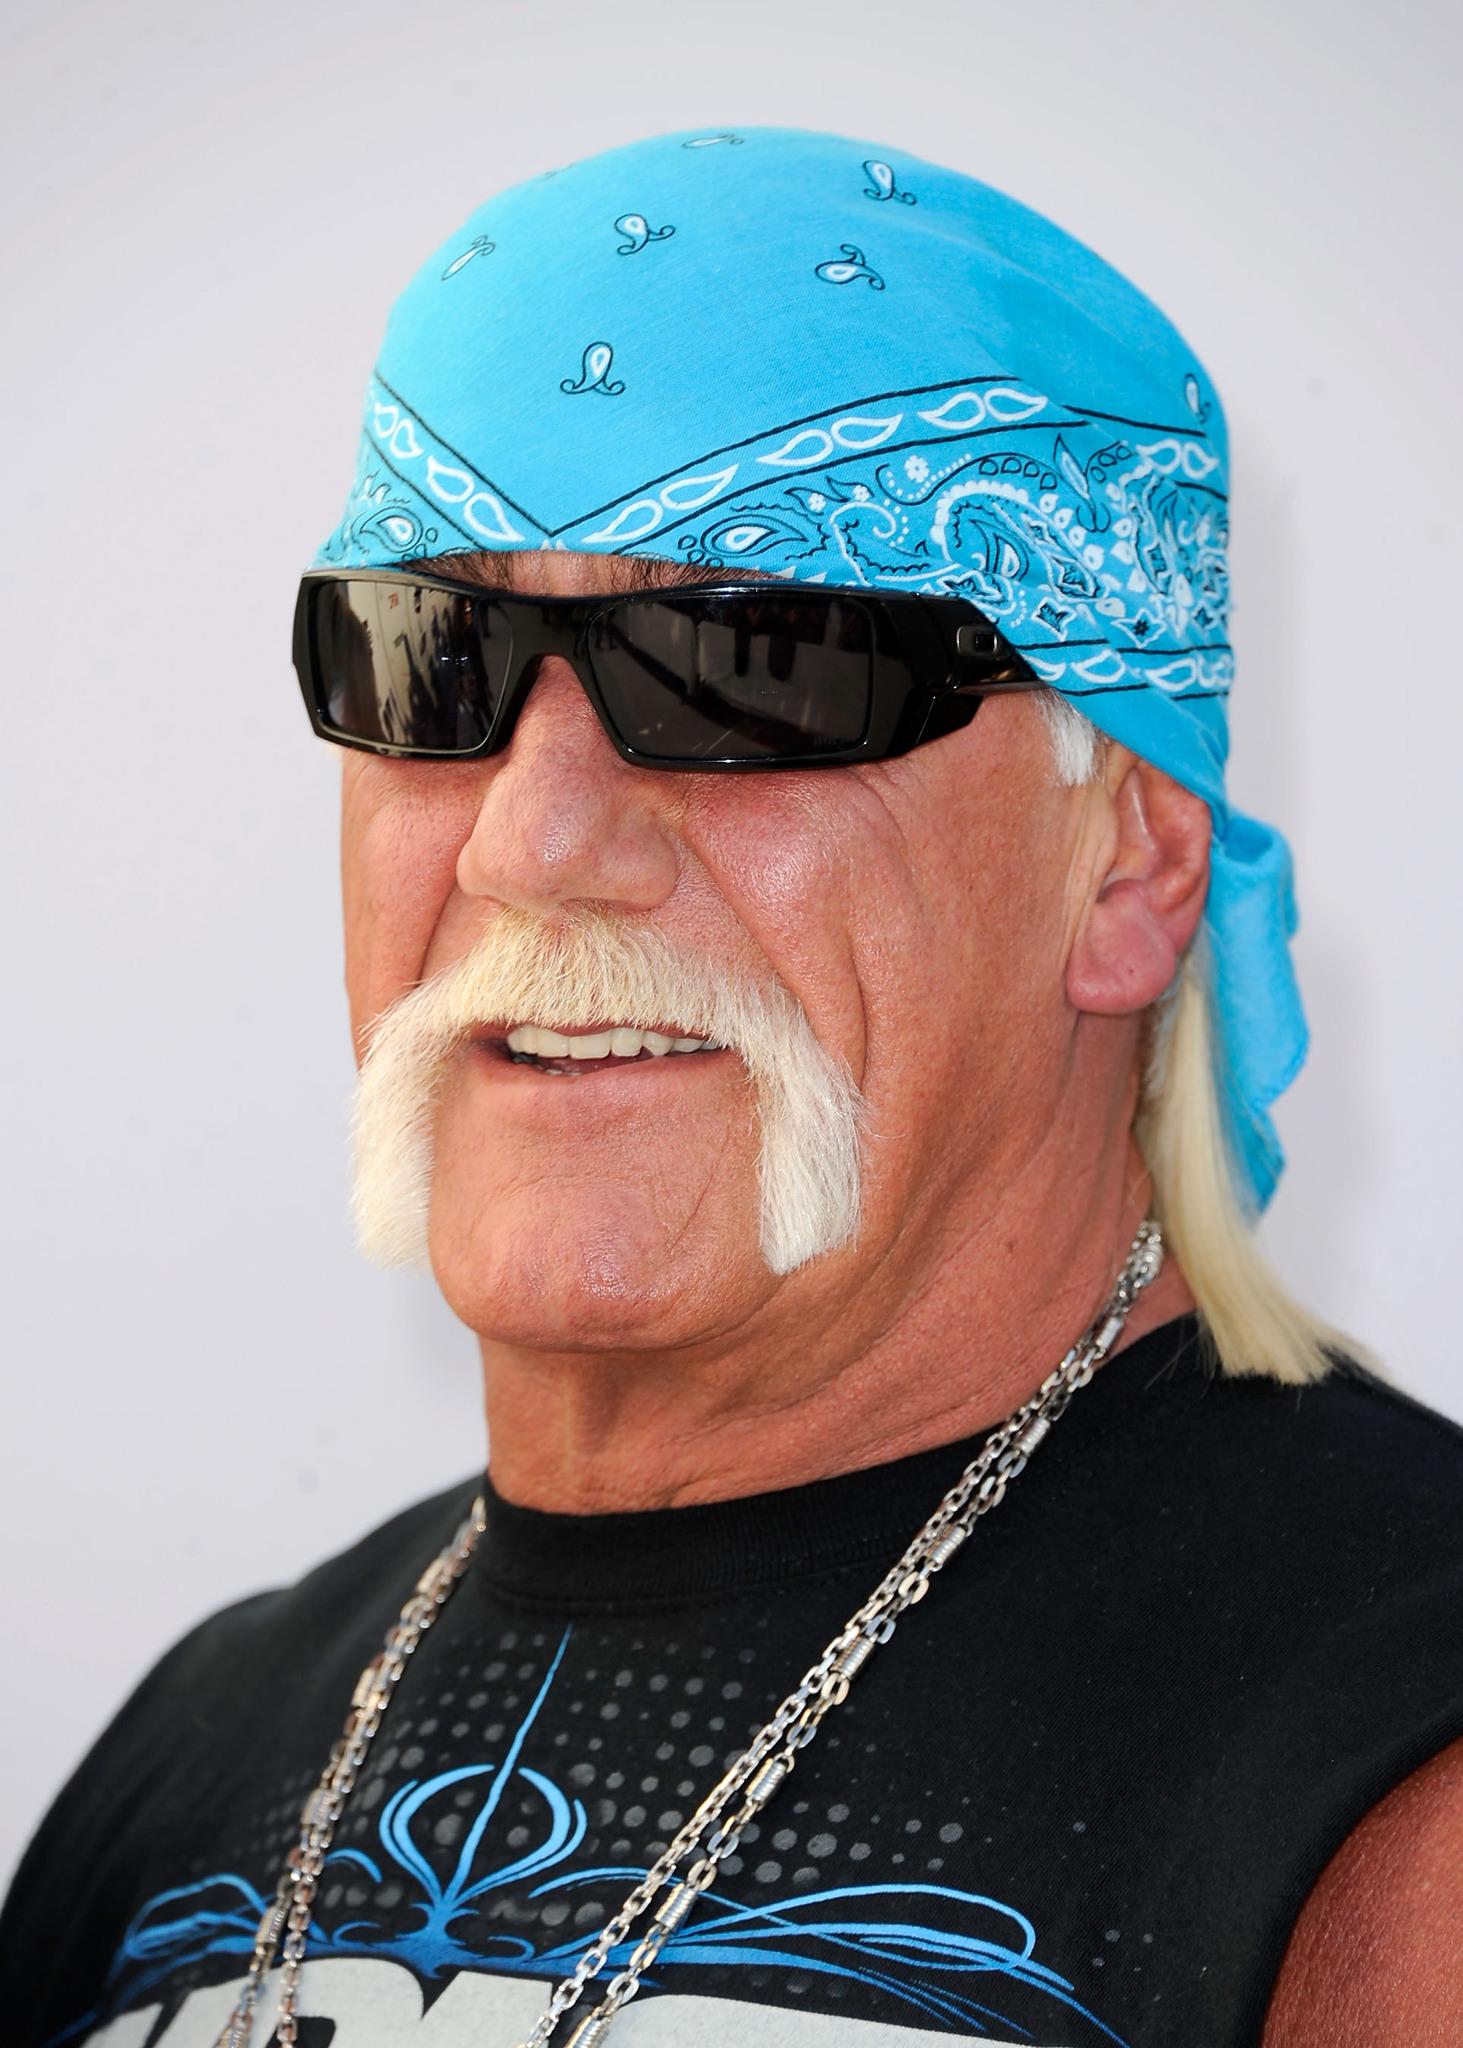 Hulk Hogan image